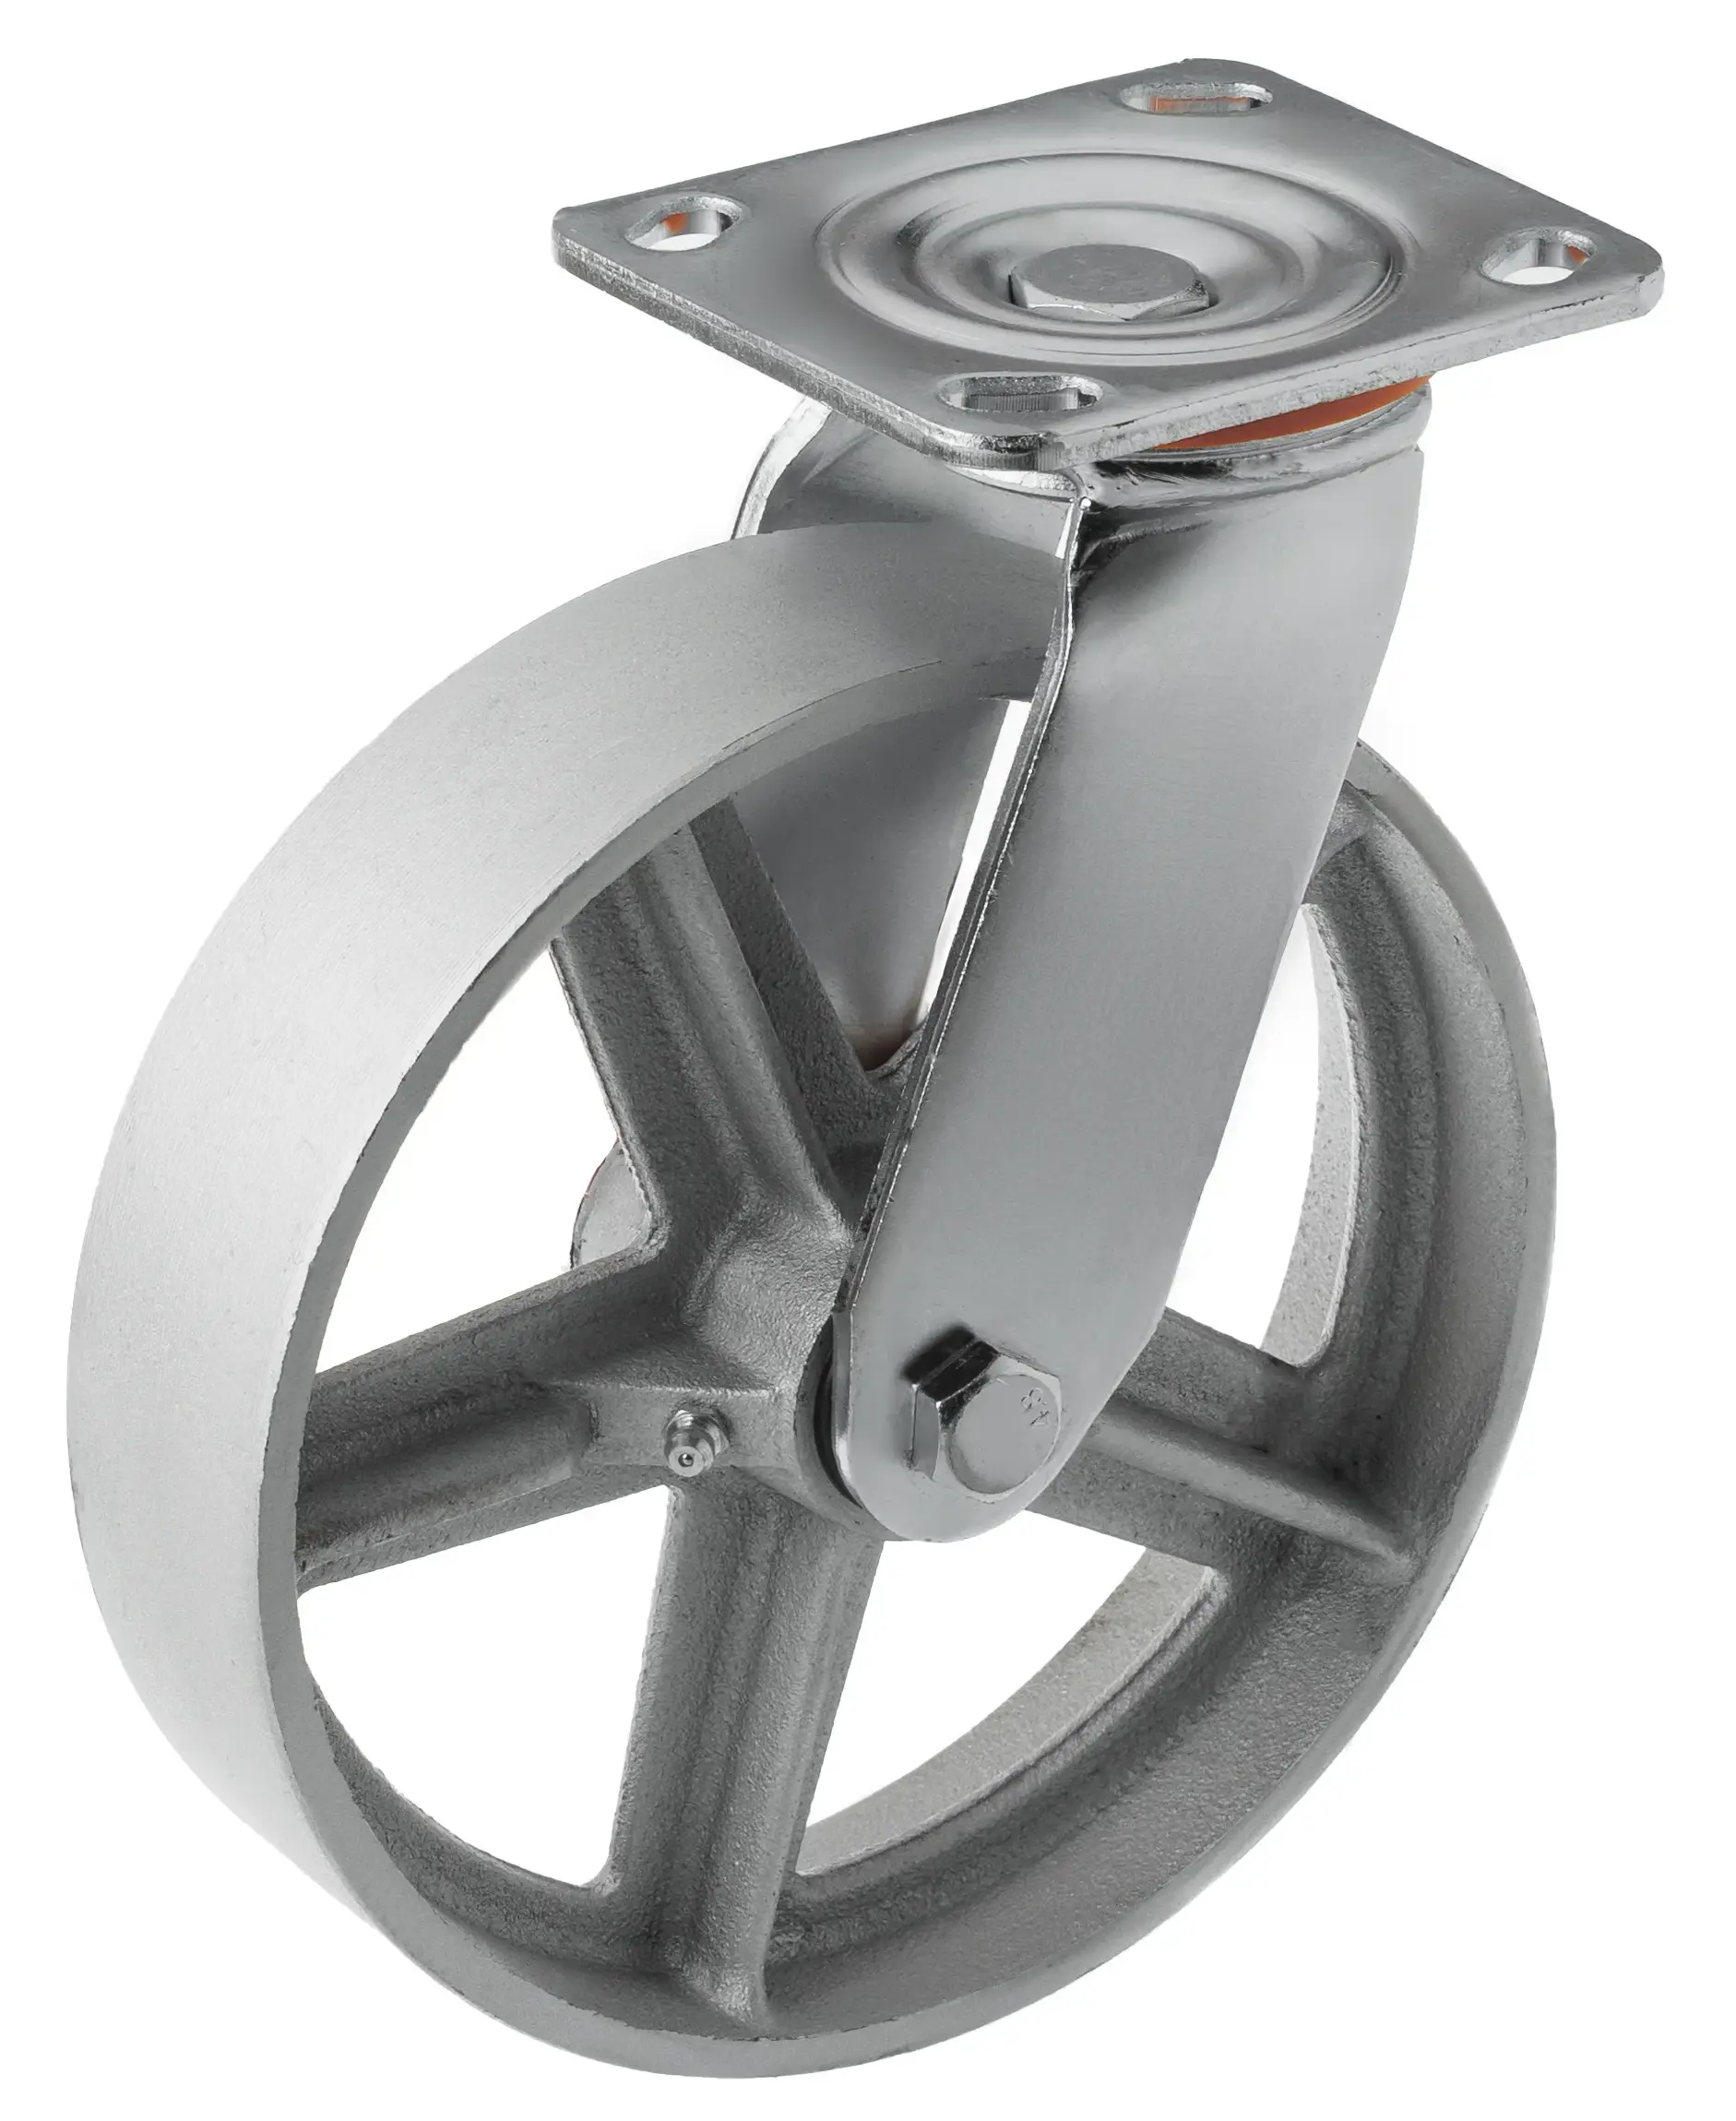 SCs 80 - Большегрузное чугунное колесо без резины 200 мм (поворот., площадка, темн. обод.)